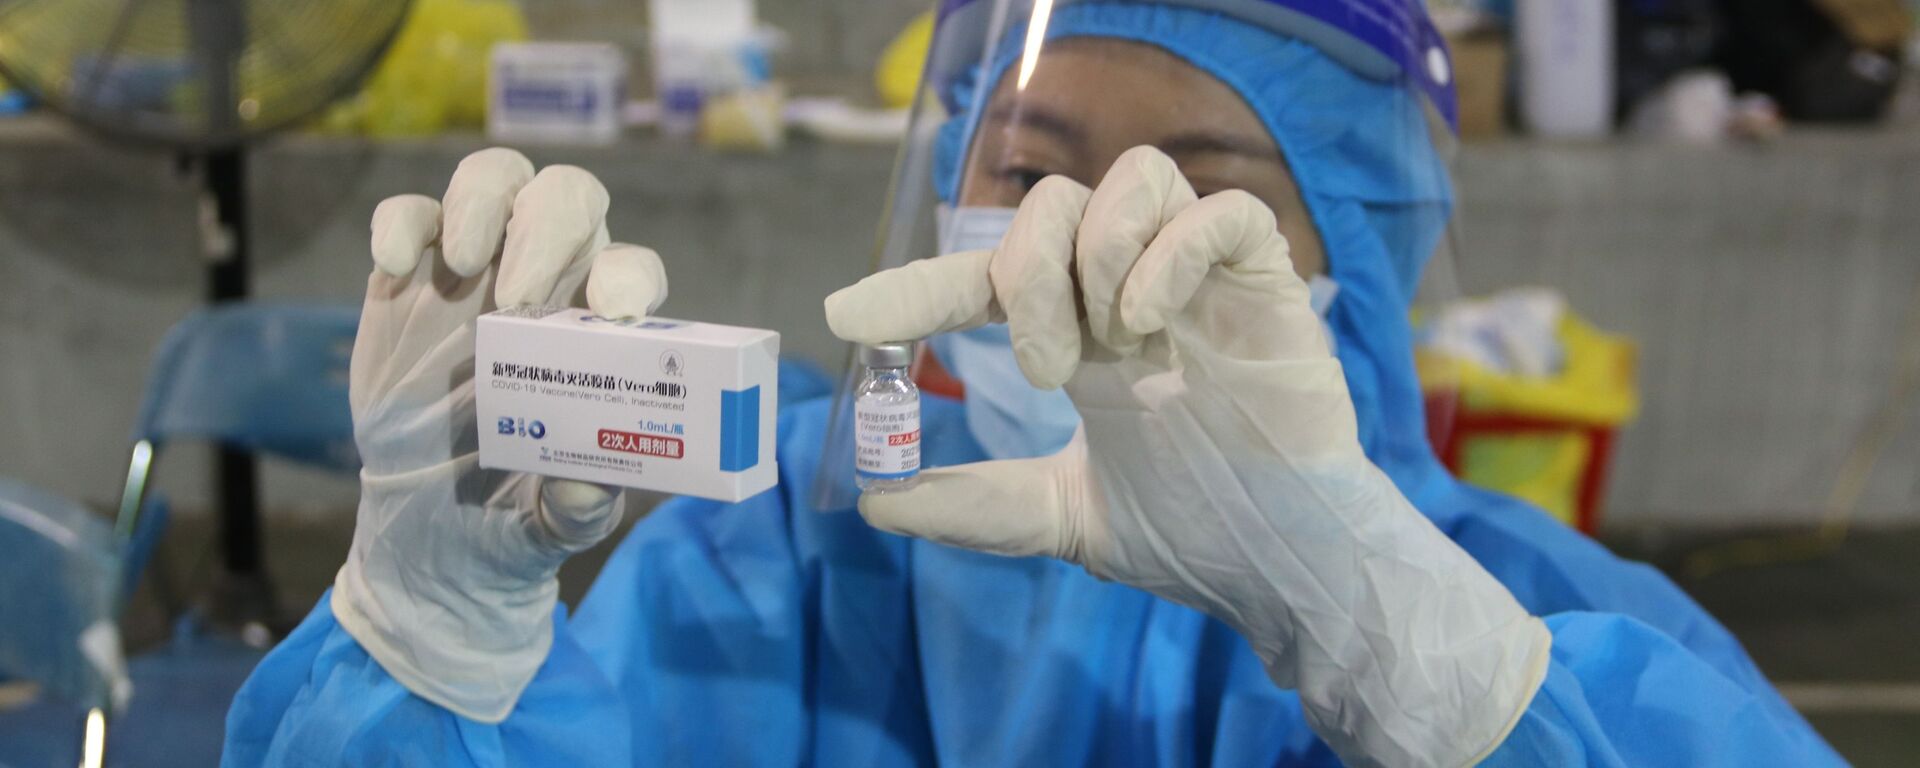 Vaccine Vero Cell của Sinopharm được sử dụng tiêm chủng tại điểm tiêm số 1 Huyền Trần Công Chúa (Quận 1). - Sputnik Việt Nam, 1920, 23.09.2021